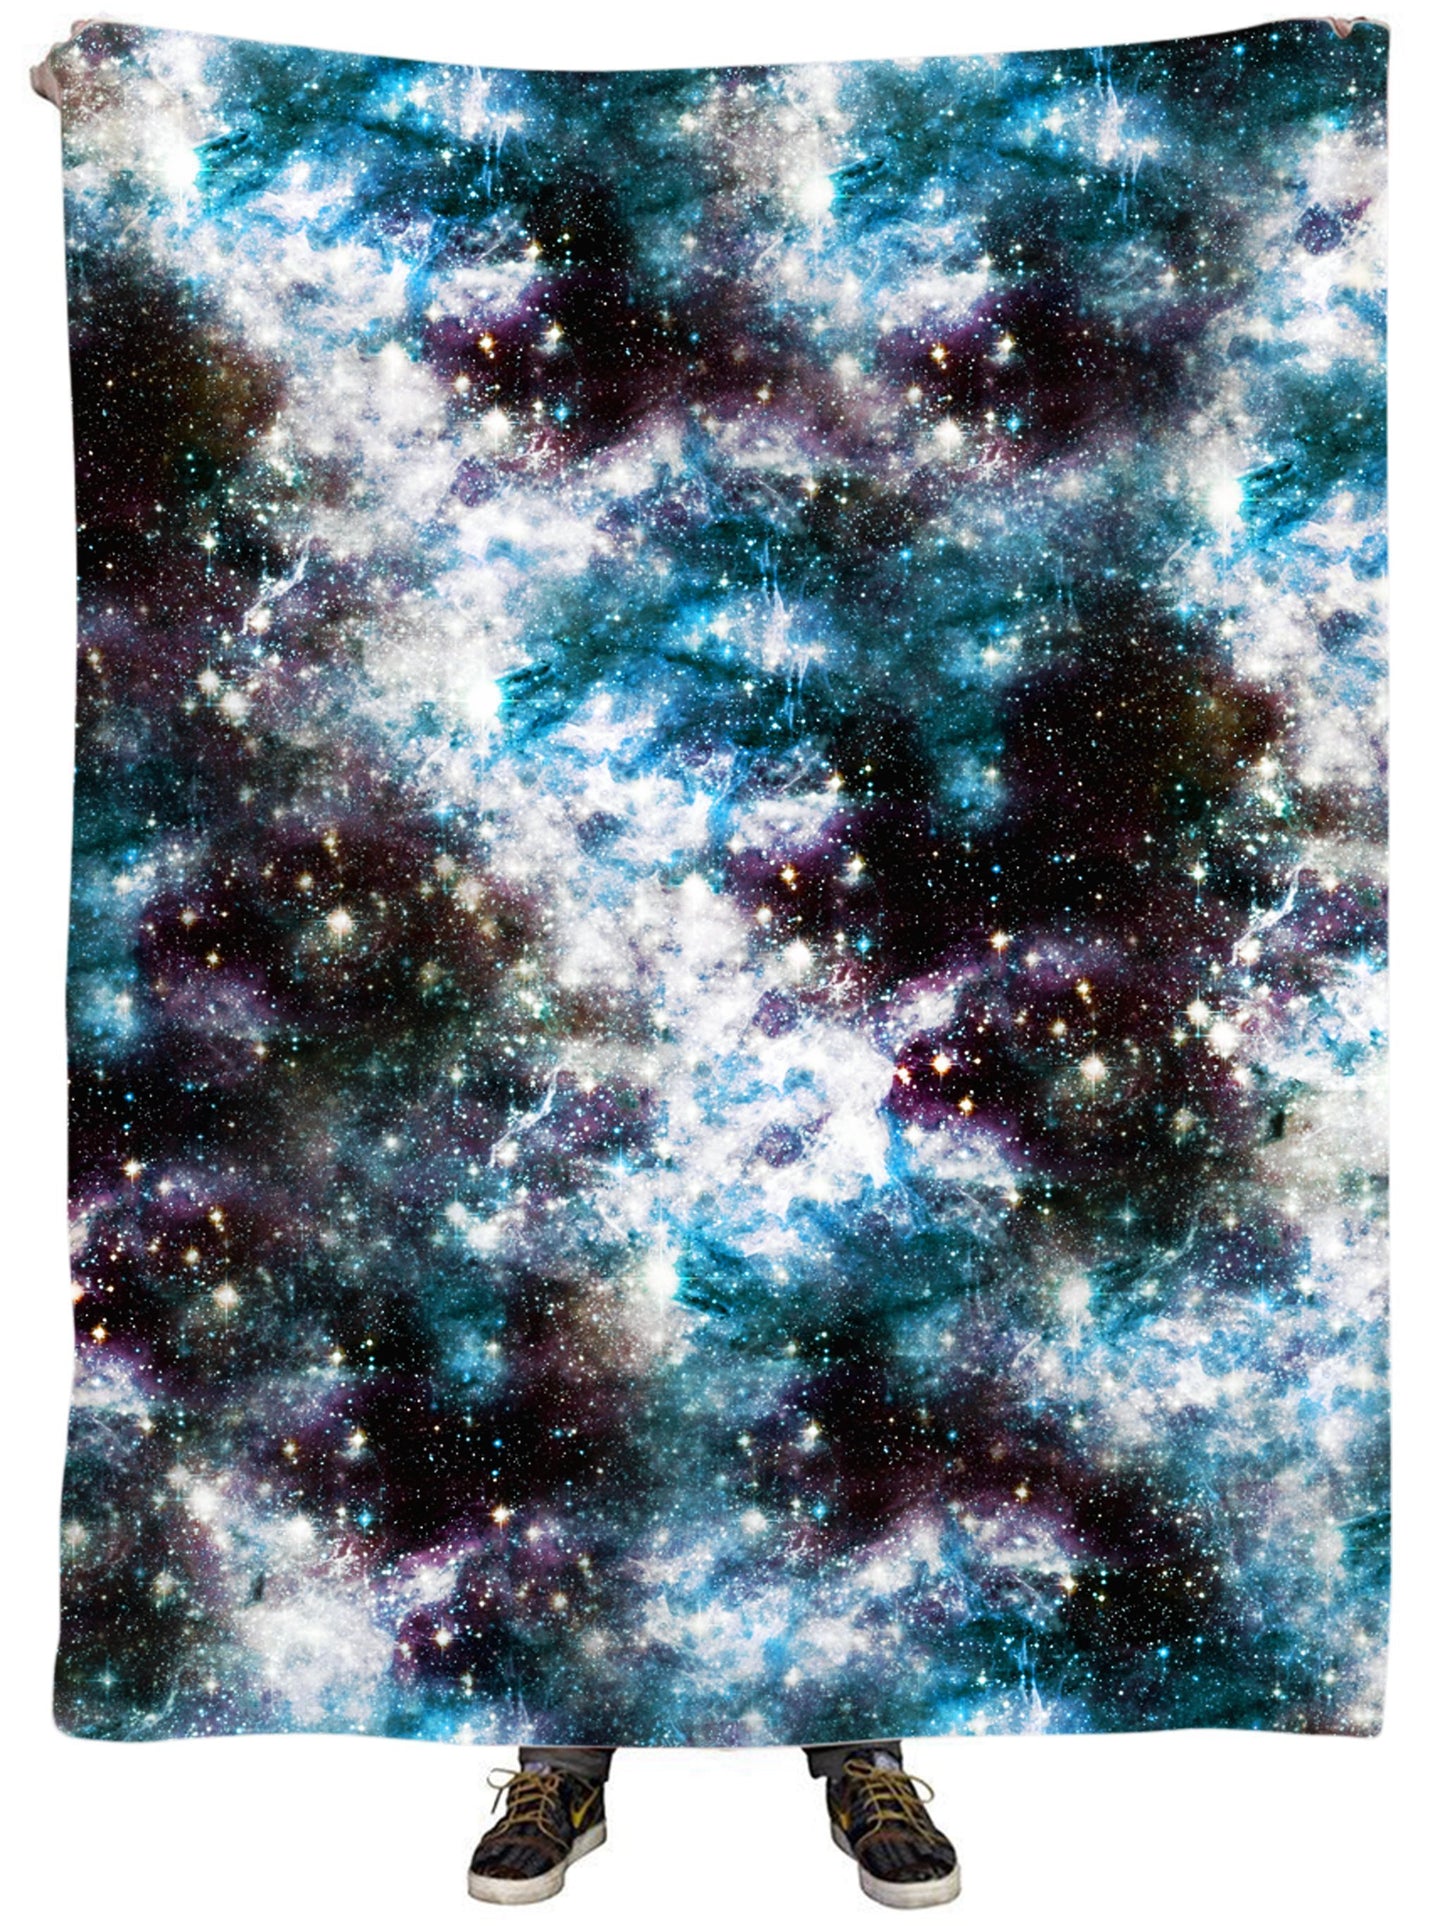 Yung Nebula Plush Blanket, Set 4 Lyfe, | iEDM